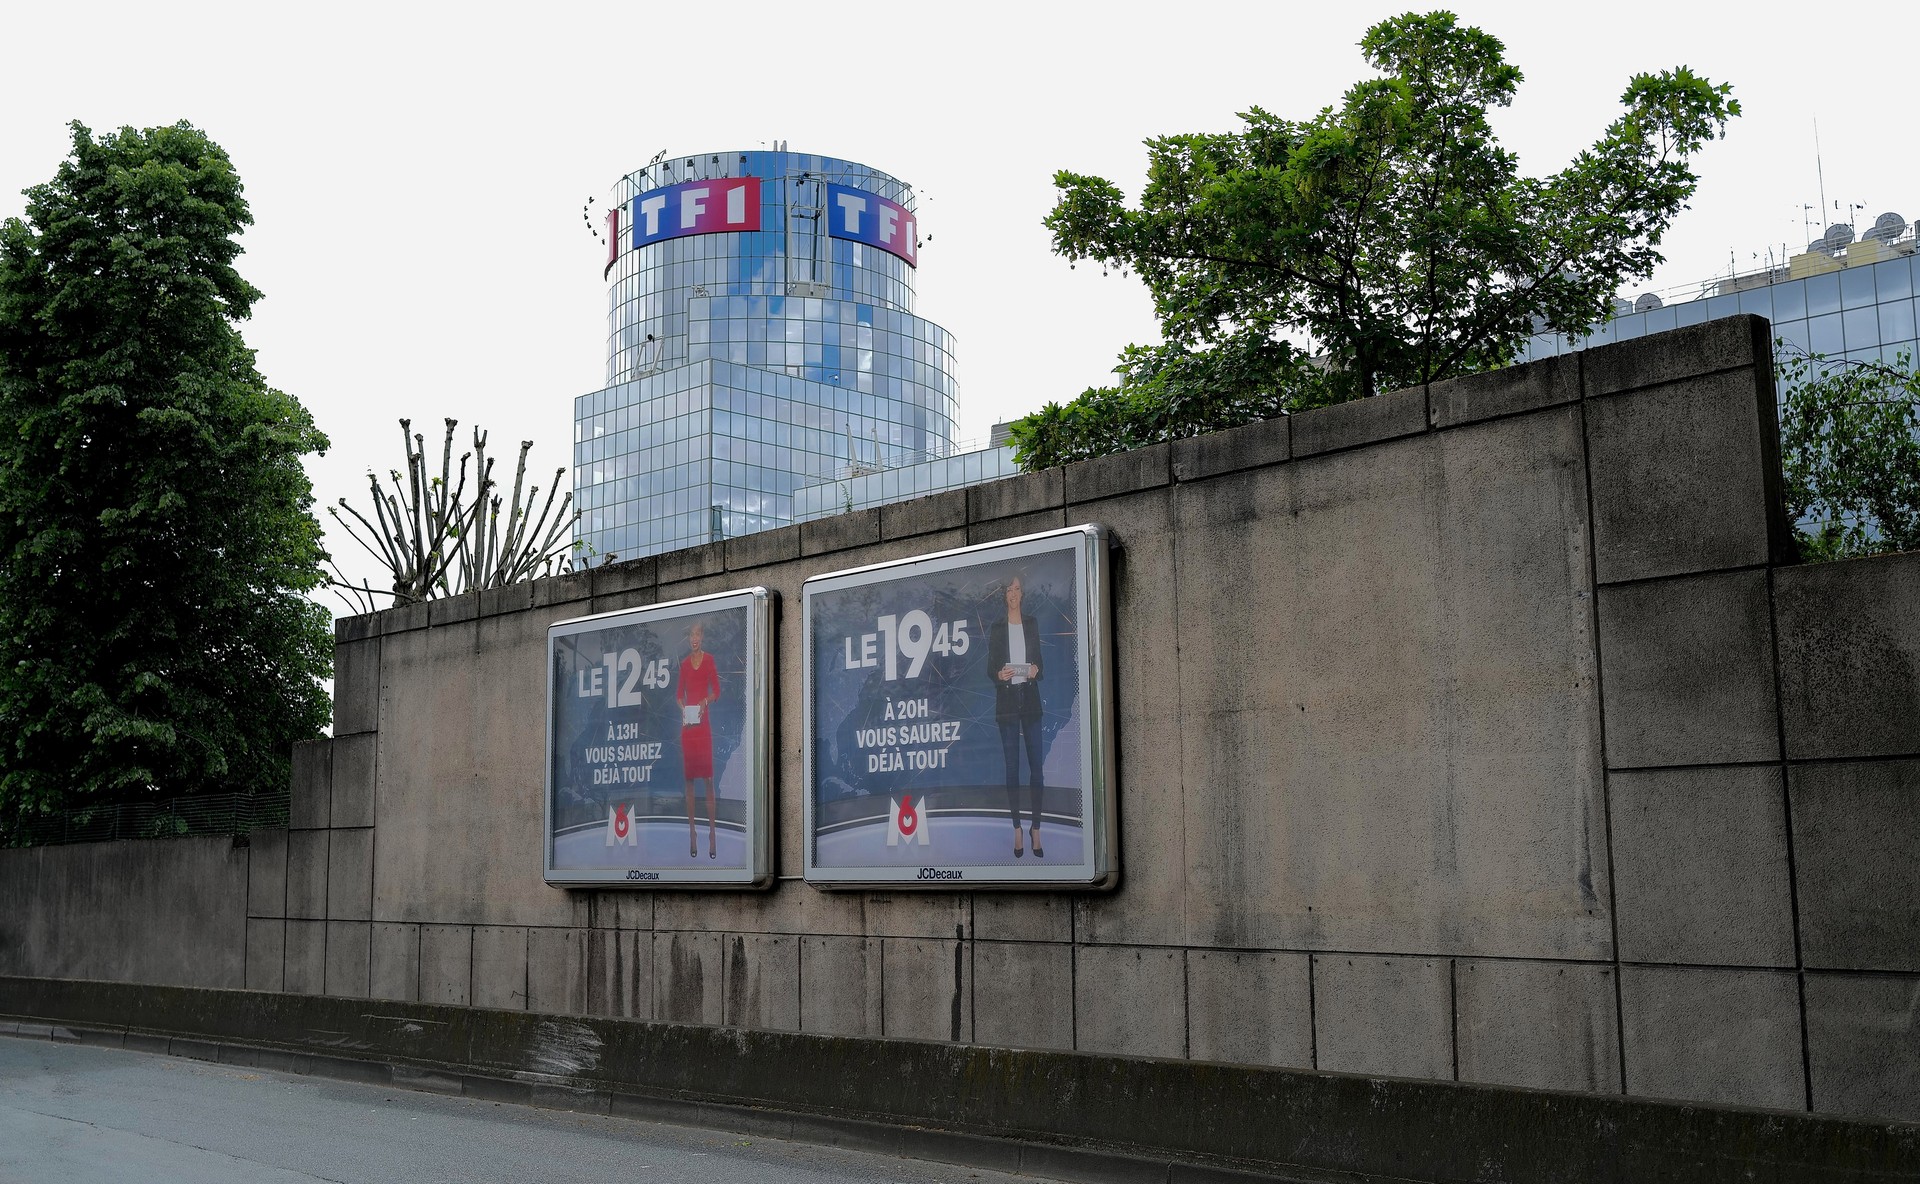 Immeuble de TF1 et affiche de M6